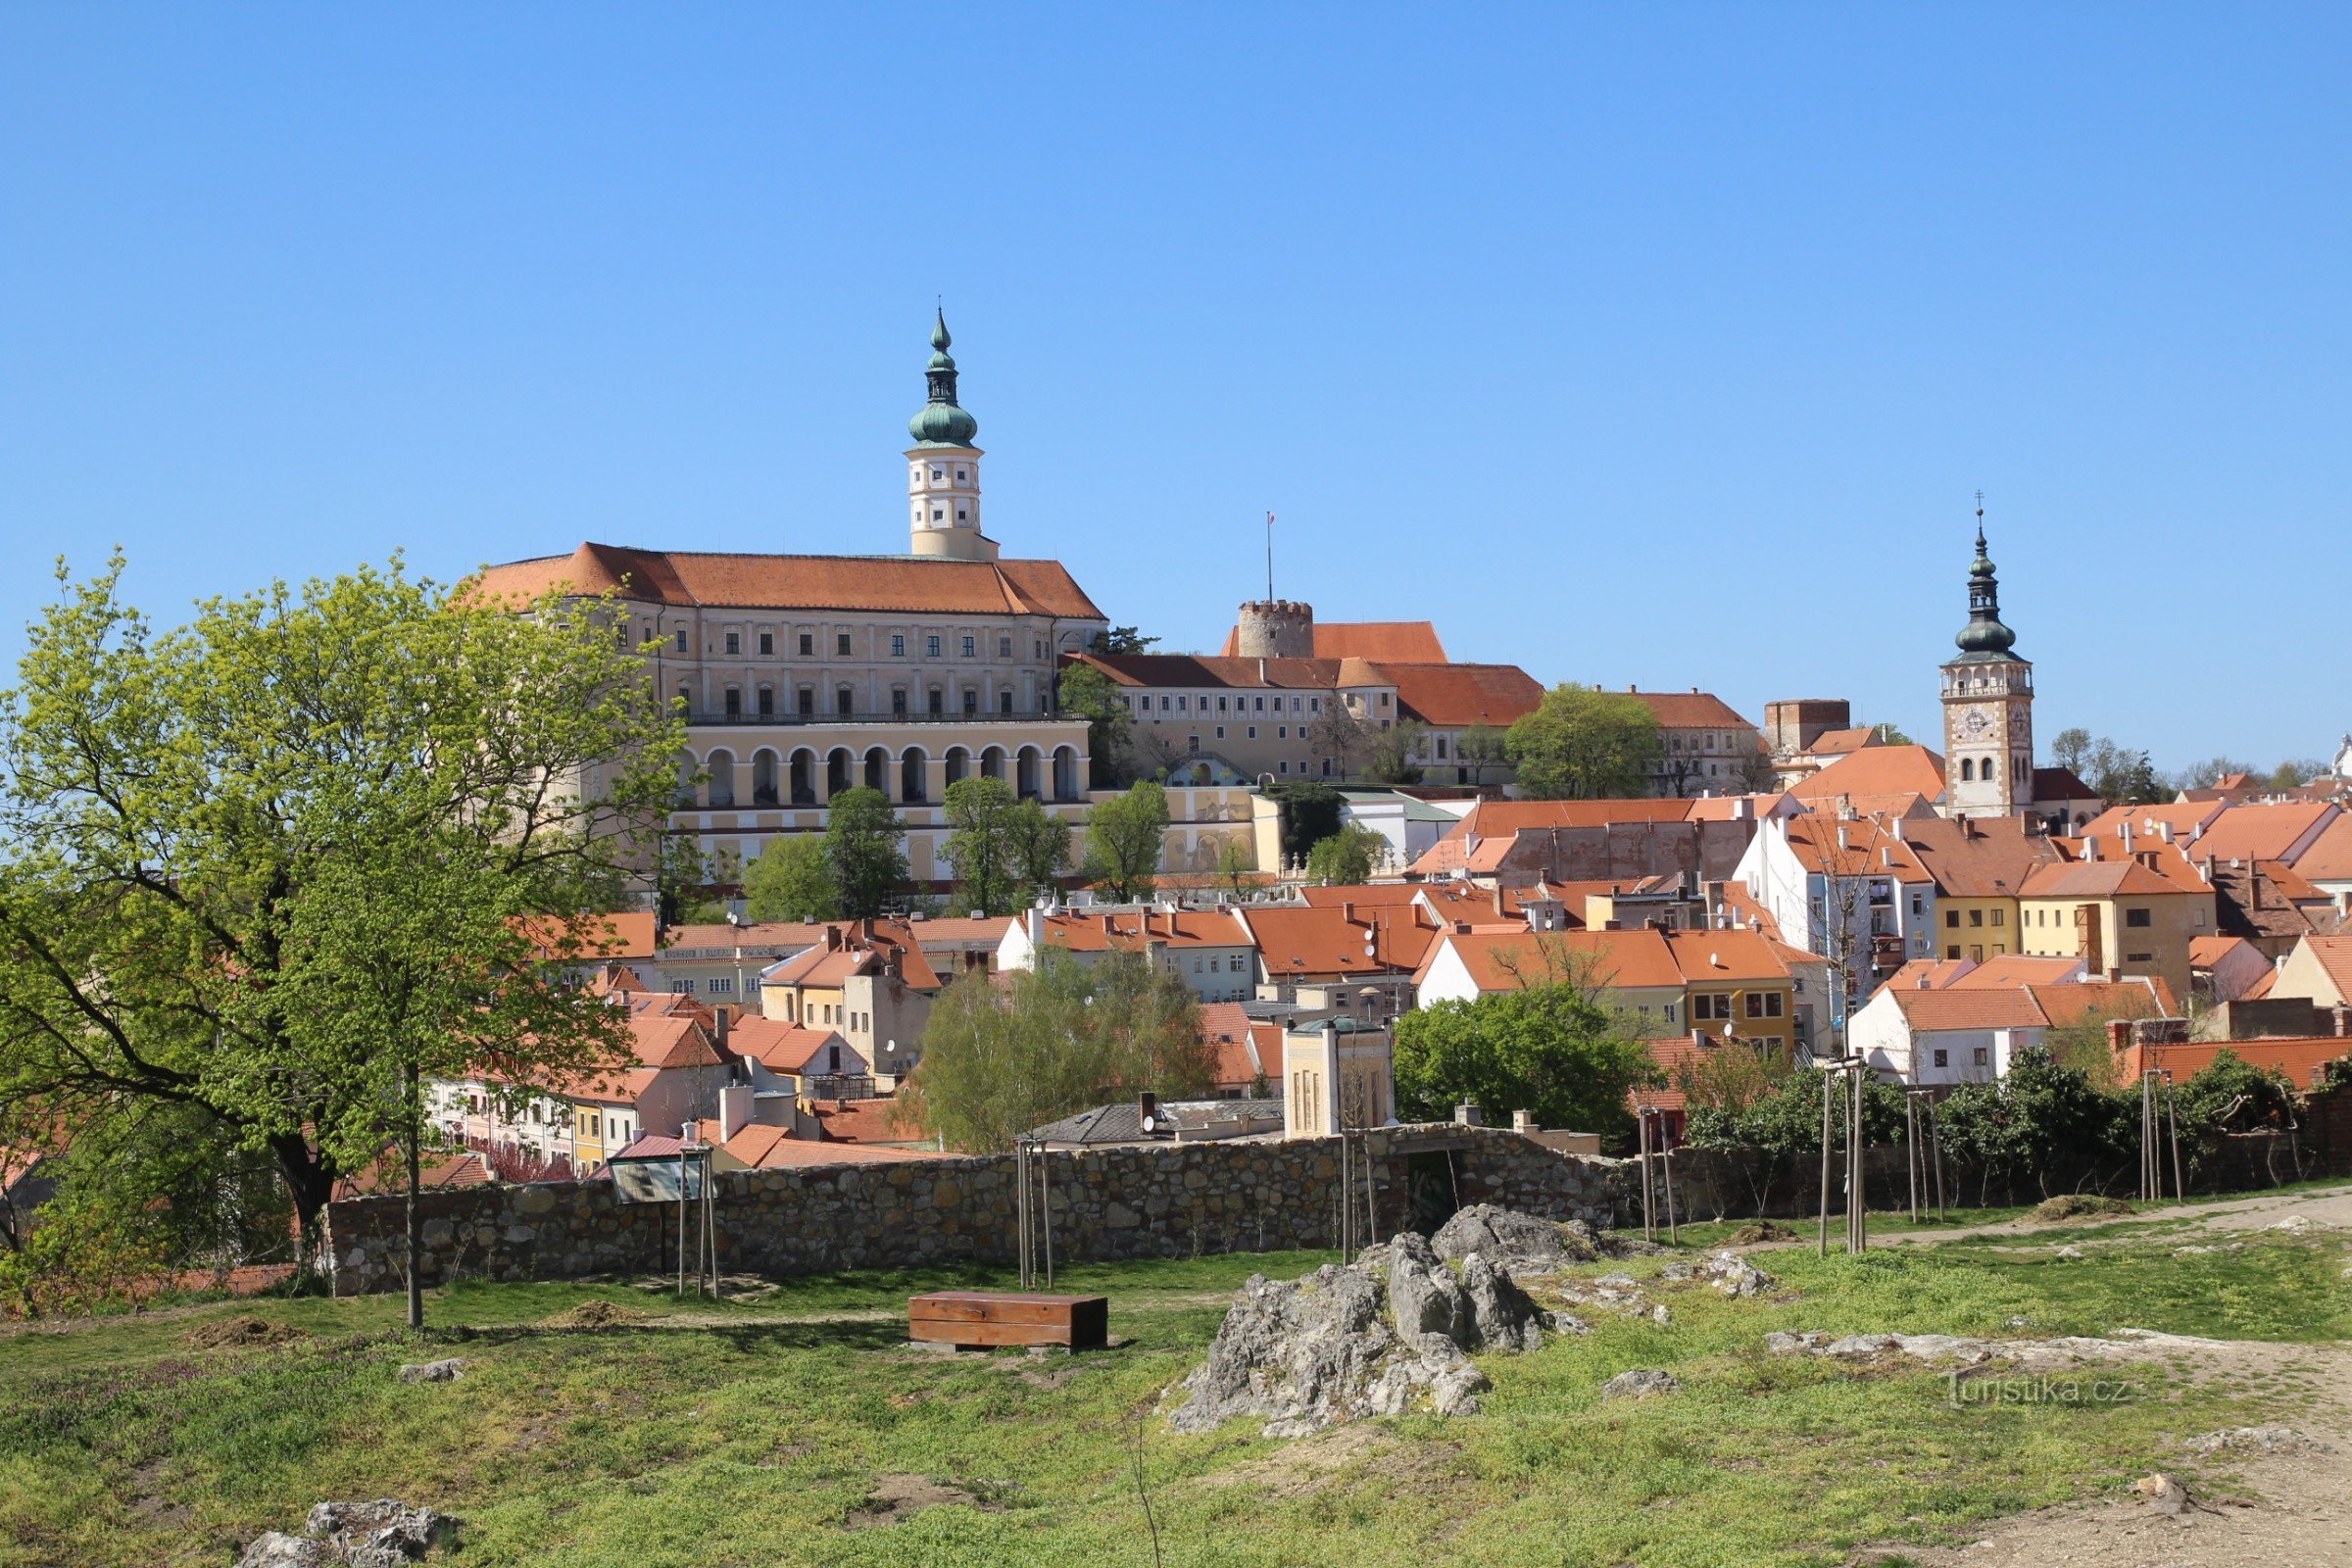 Pohled z vyhlídky na historické centrum města s dominantou zámku